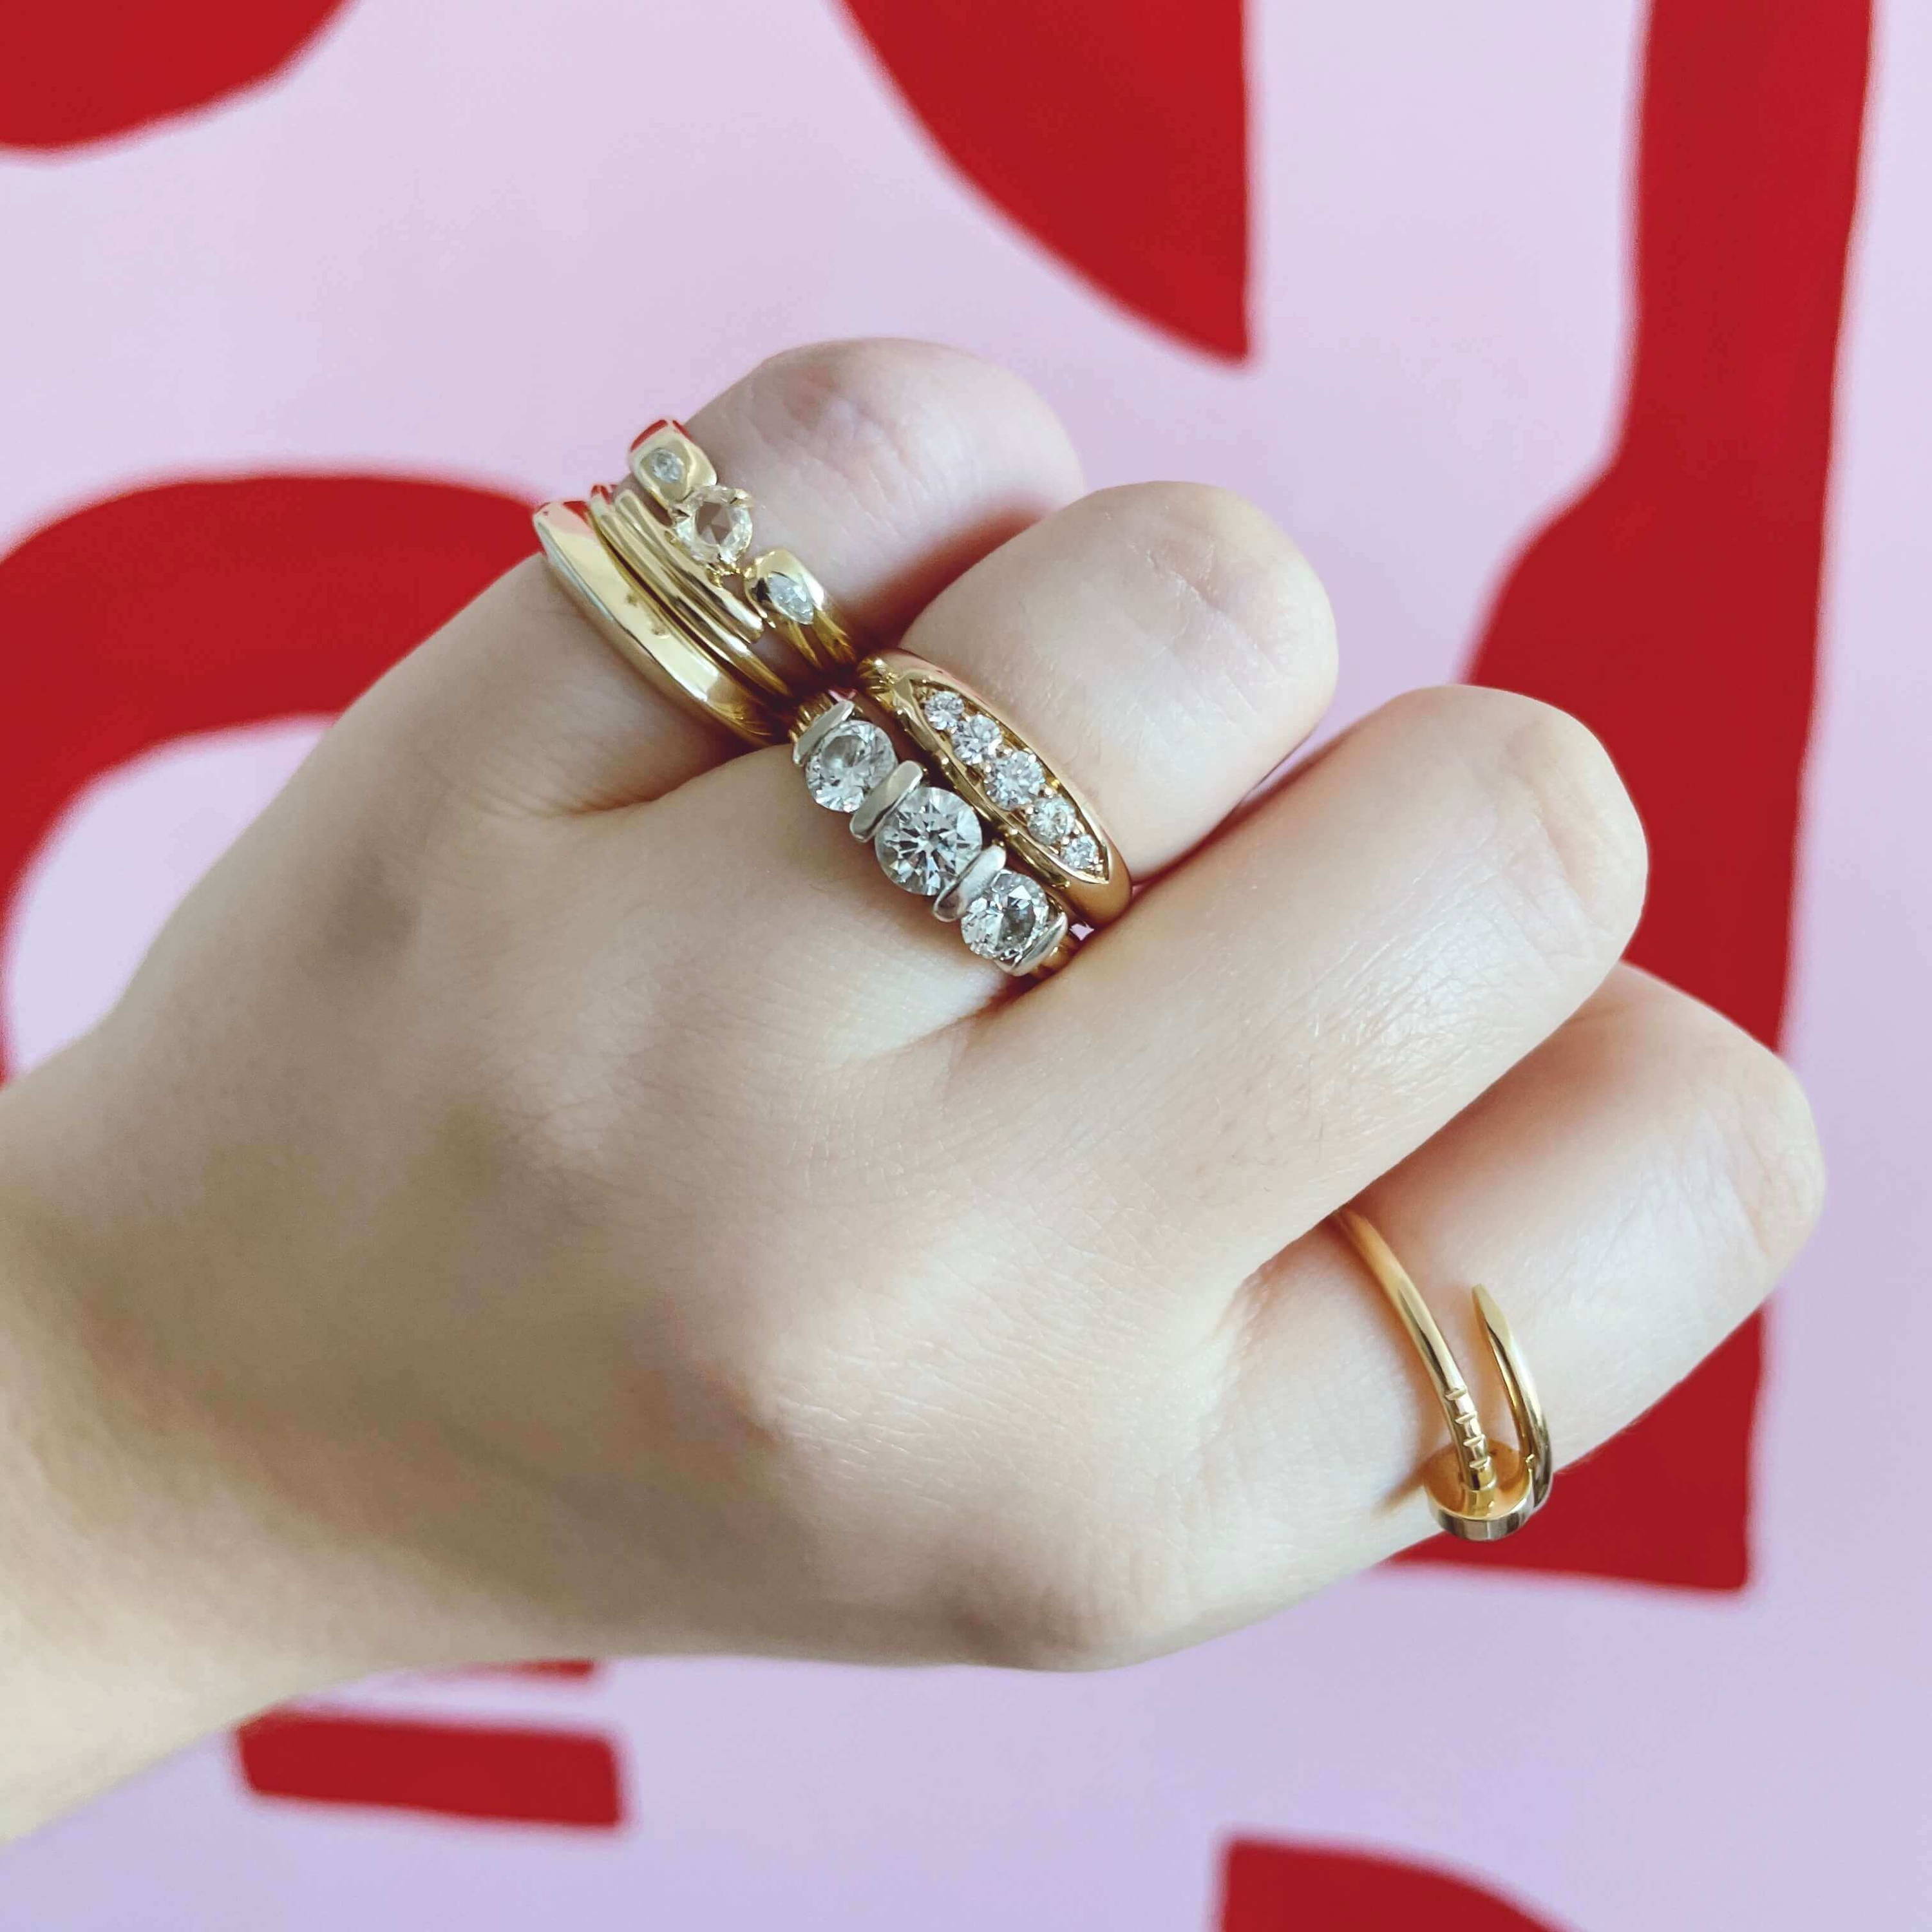 Lauren Maxwell's rings